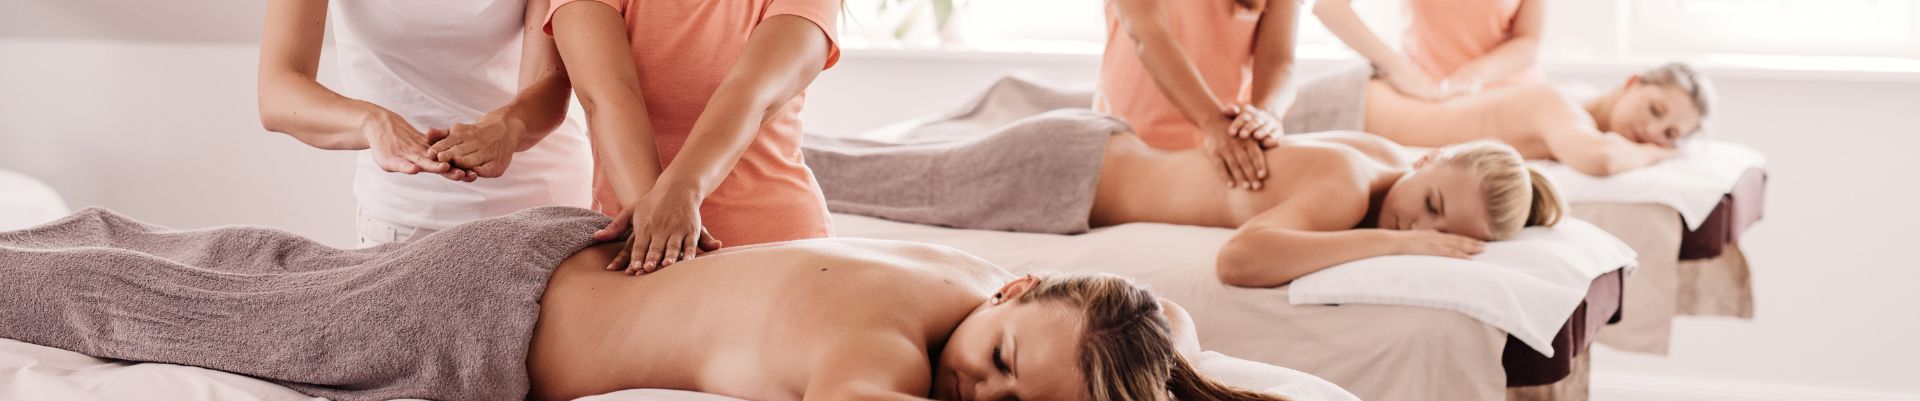 la meilleure école de massage en france , ecole formation massage , lyo-formation-massage.fr , formation-massage-france.fr (1)